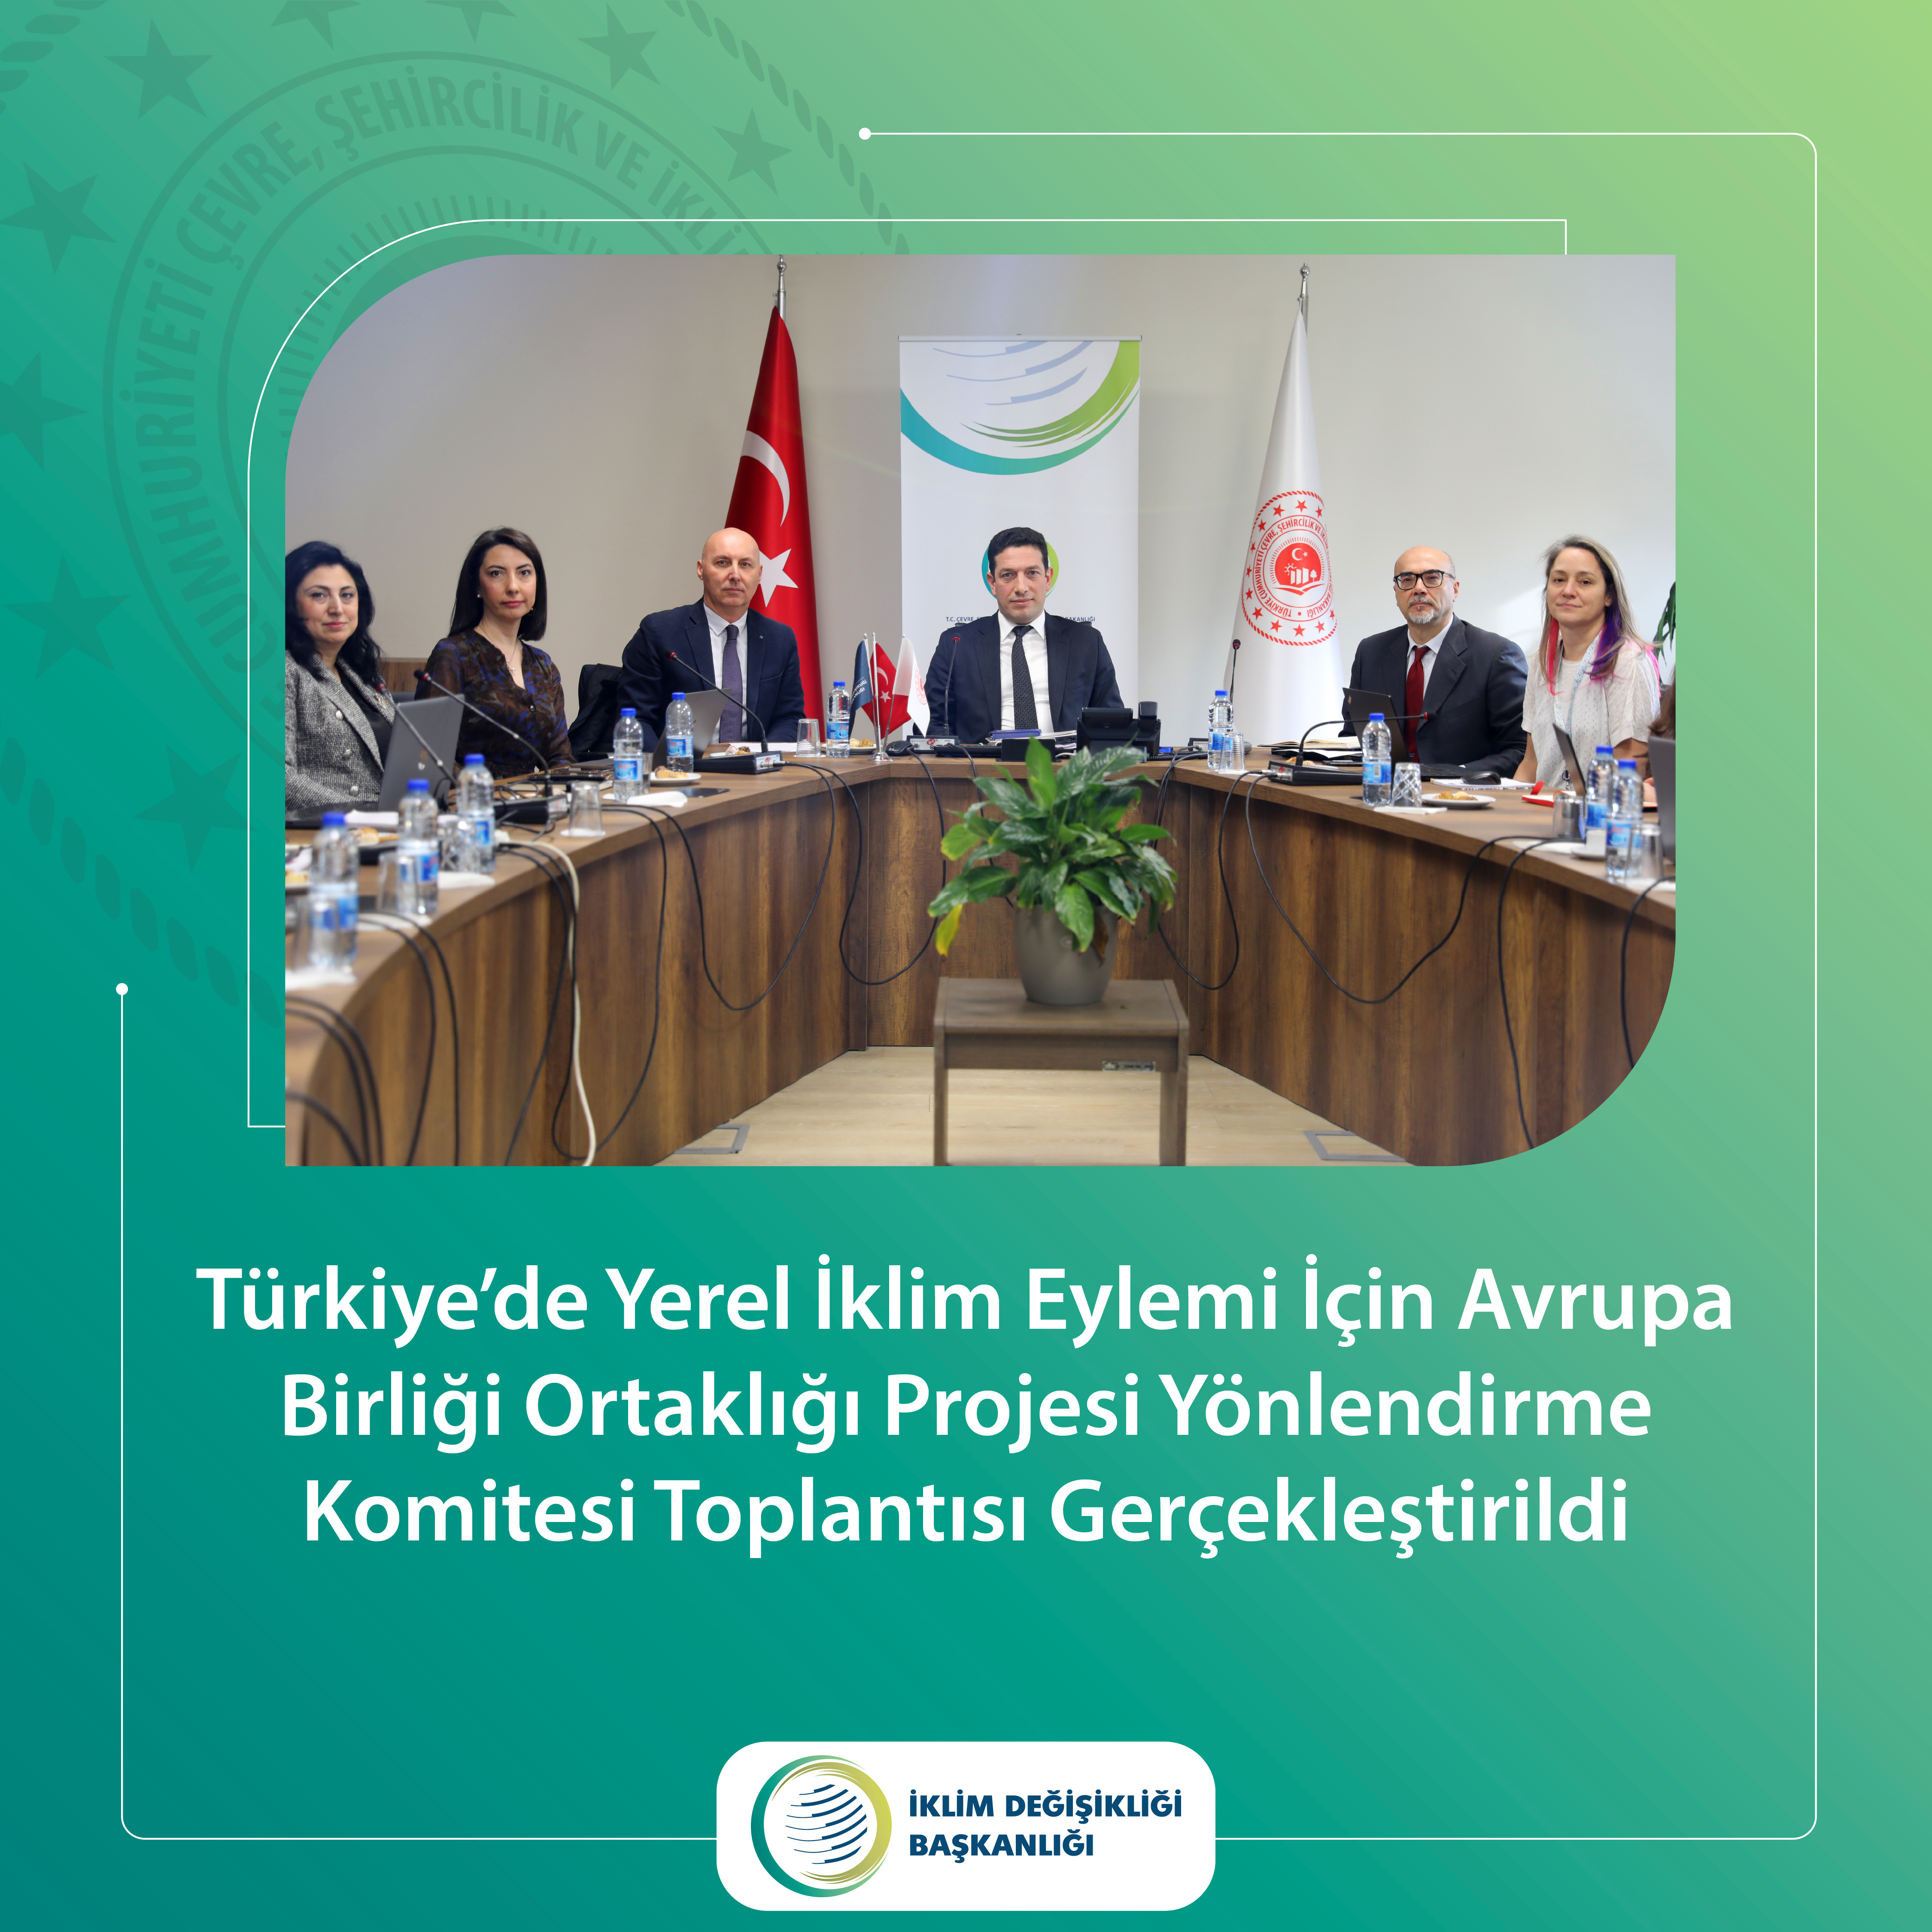 Türkiye’de Yerel İklim Eylemi İçin Avrupa Birliği Ortaklığı Projesi Yönlendirme Komitesi Toplantısı Gerçekleştirildi